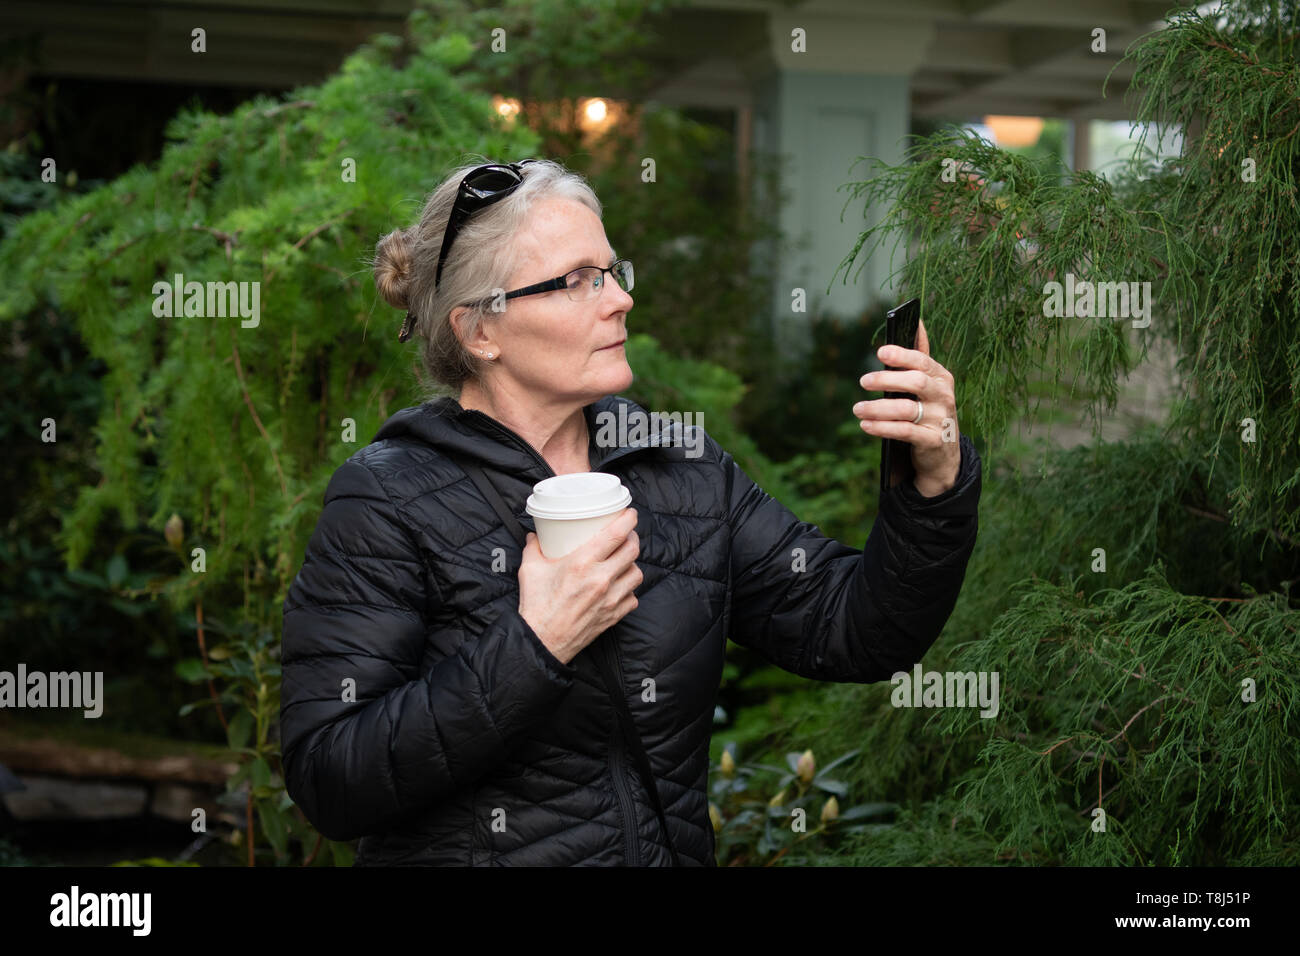 Donna in piedi all'esterno guardando il suo telefono cellulare, British Columbia, Canada Foto Stock